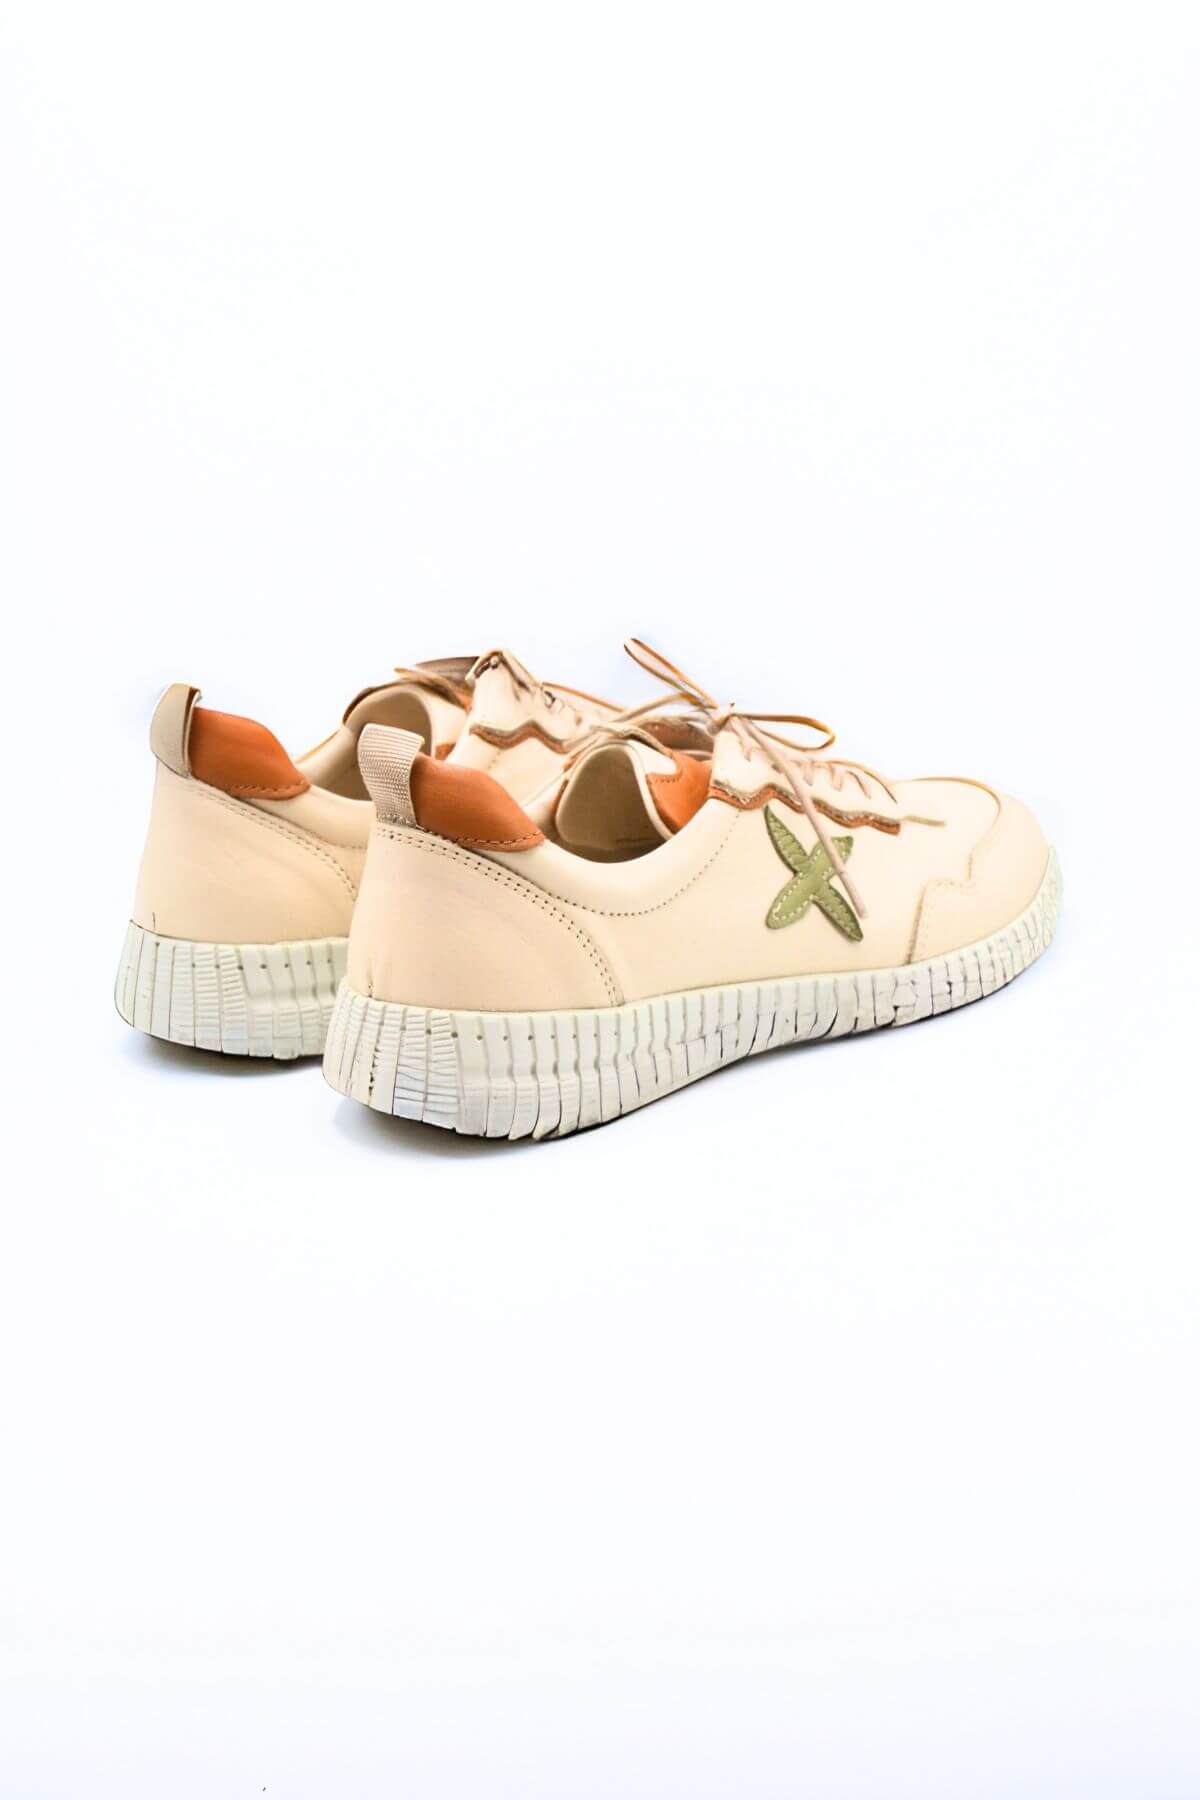 Kadın Comfort Deri Ayakkabı Bej 2216112Y - Thumbnail